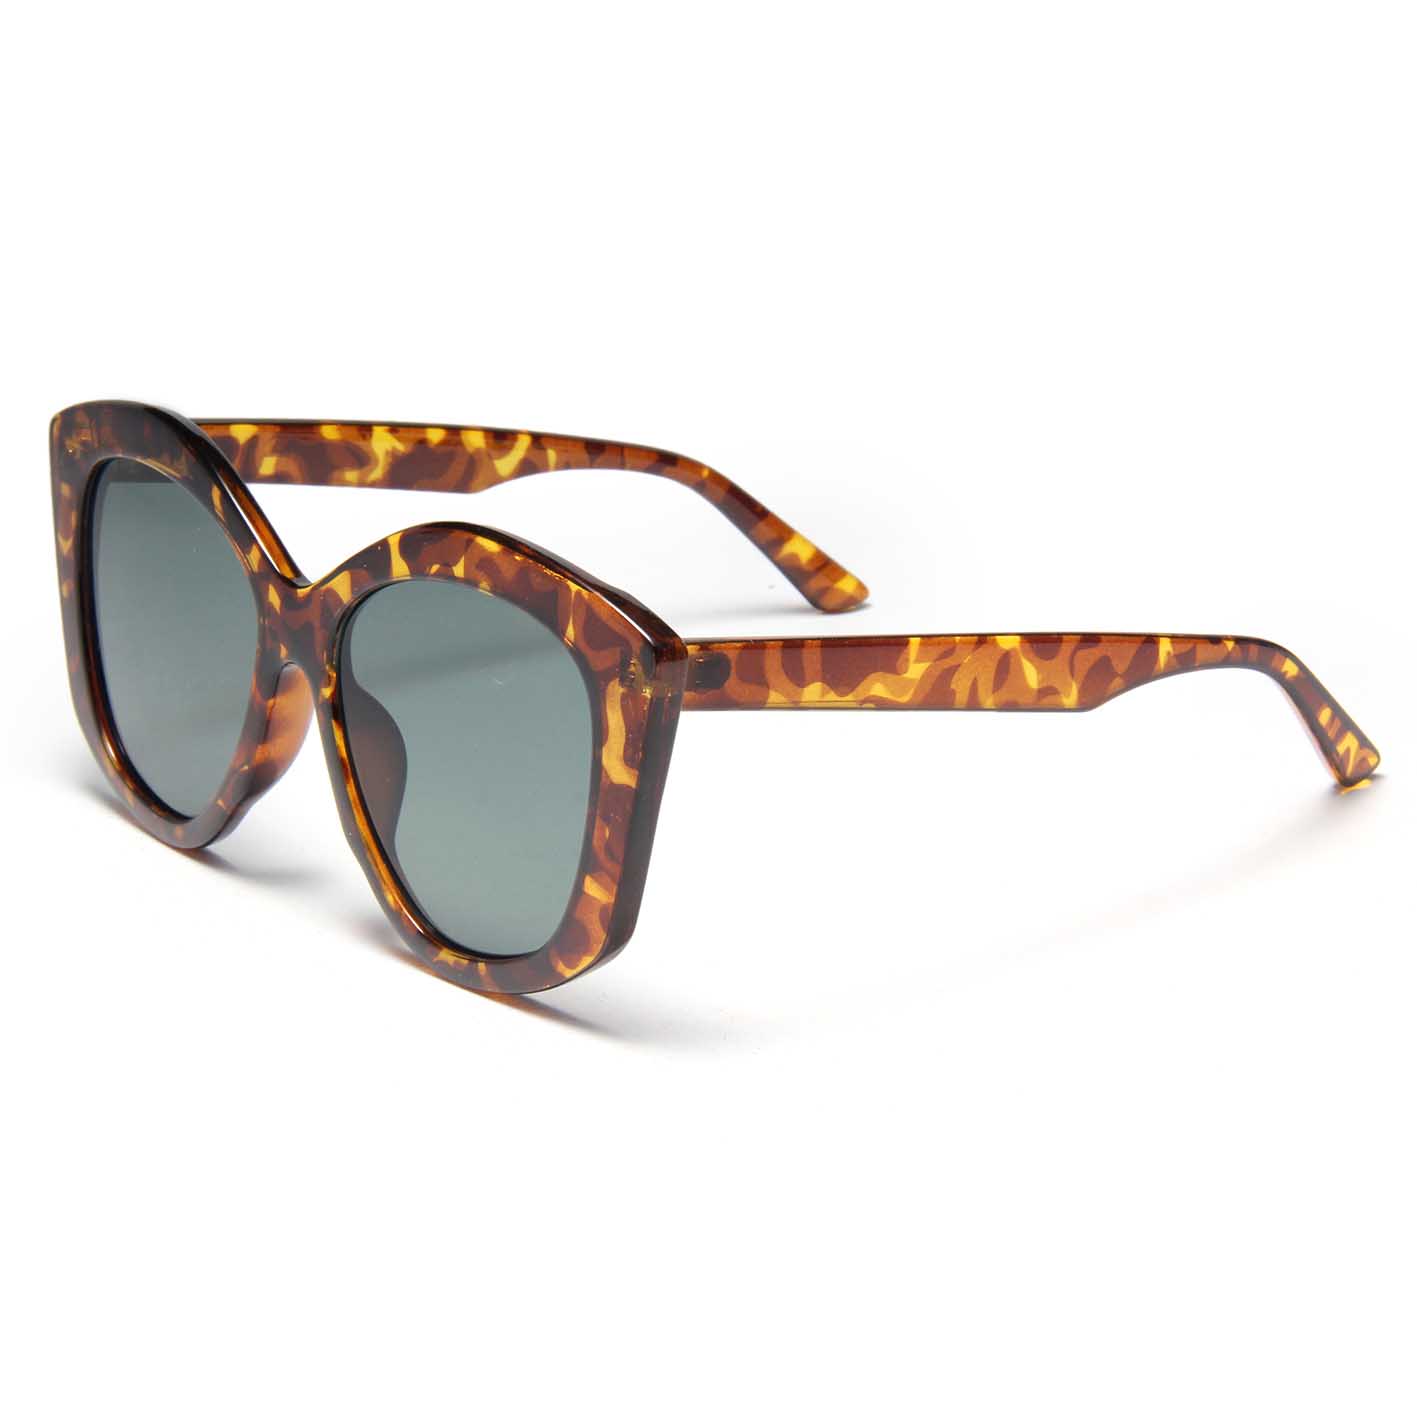 S27023 Gafas de sol clásicas retro con forma de ojo de gato, gafas de sol de tendencia con diseño de leopardo para niñas, gafas de sol multicolores de moda Vintage con montura grande para mujeres y hombres